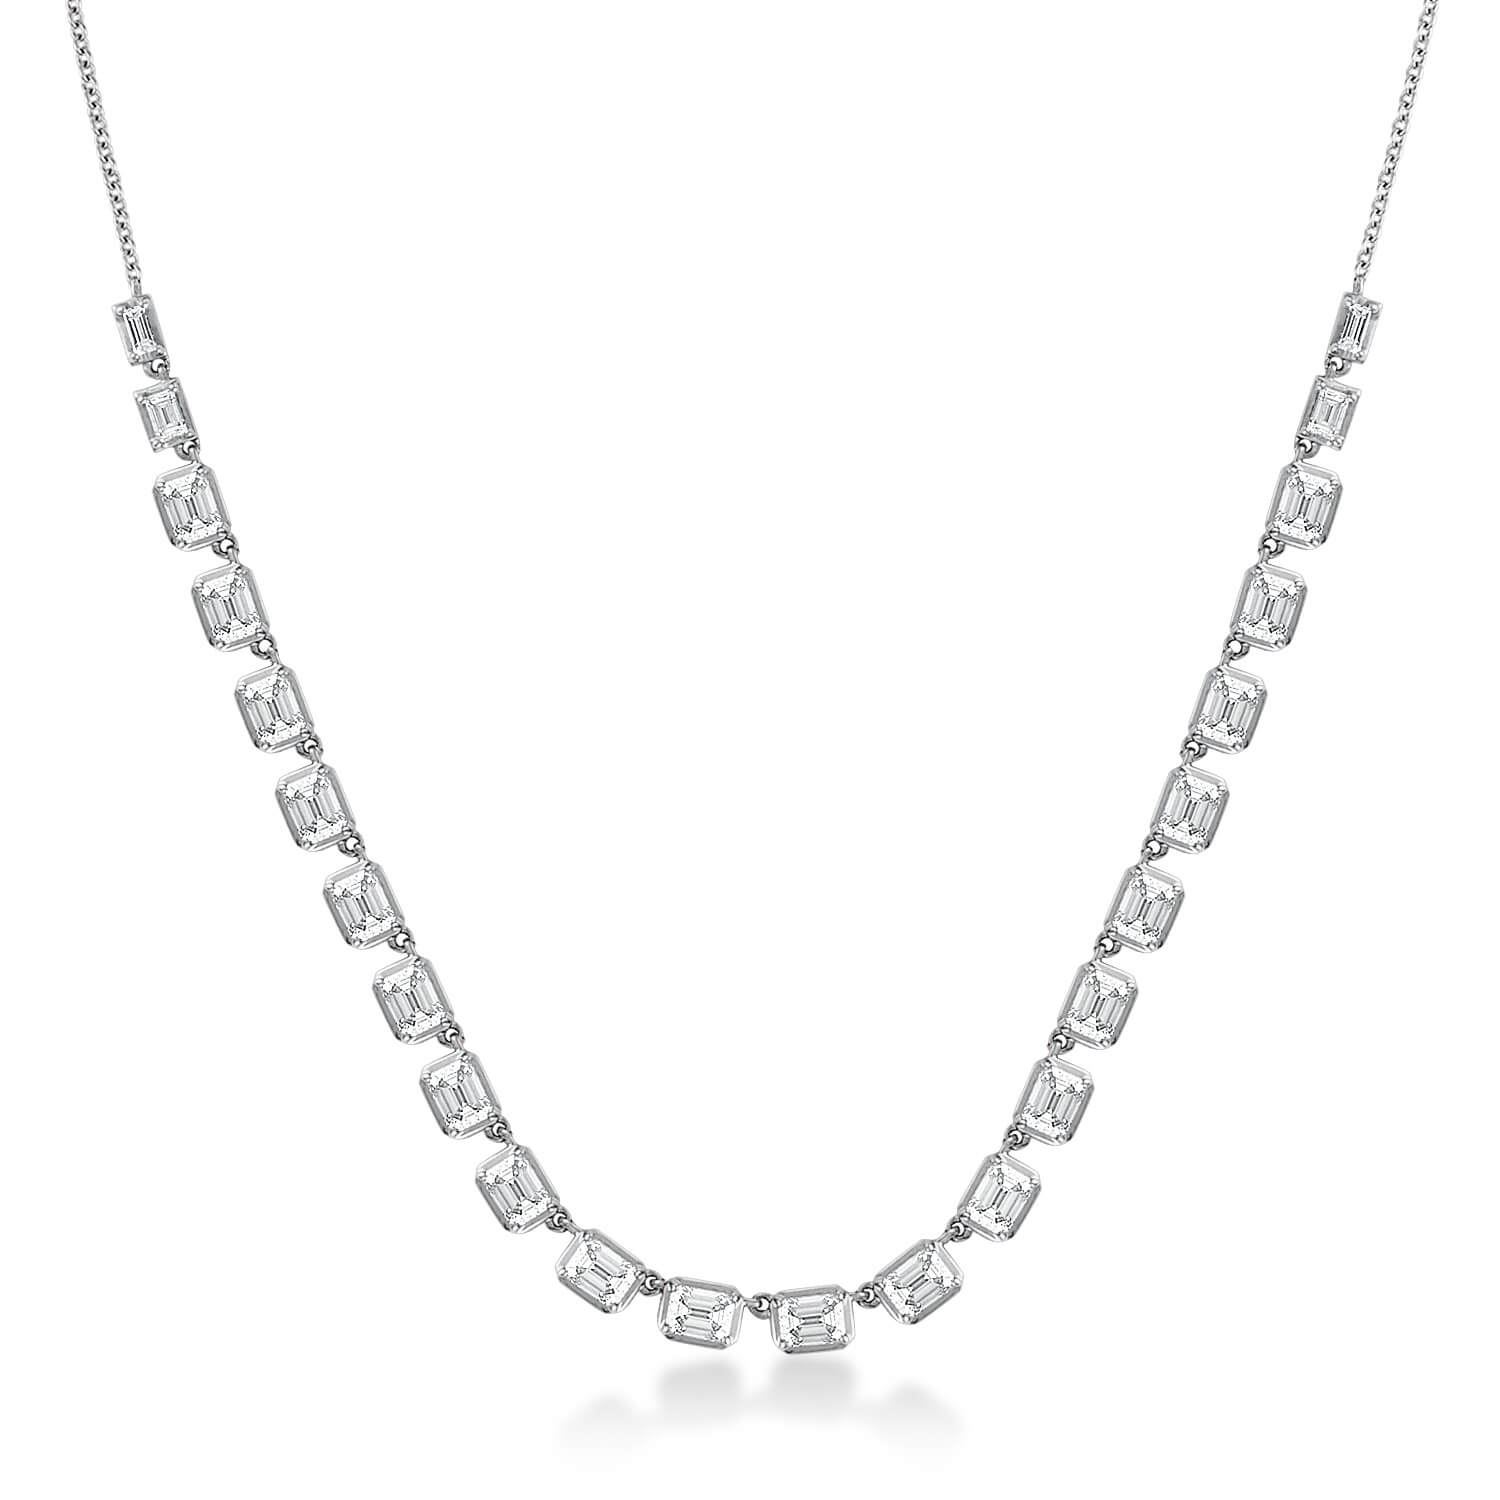 emerald-cut-diamond-tennis-necklace